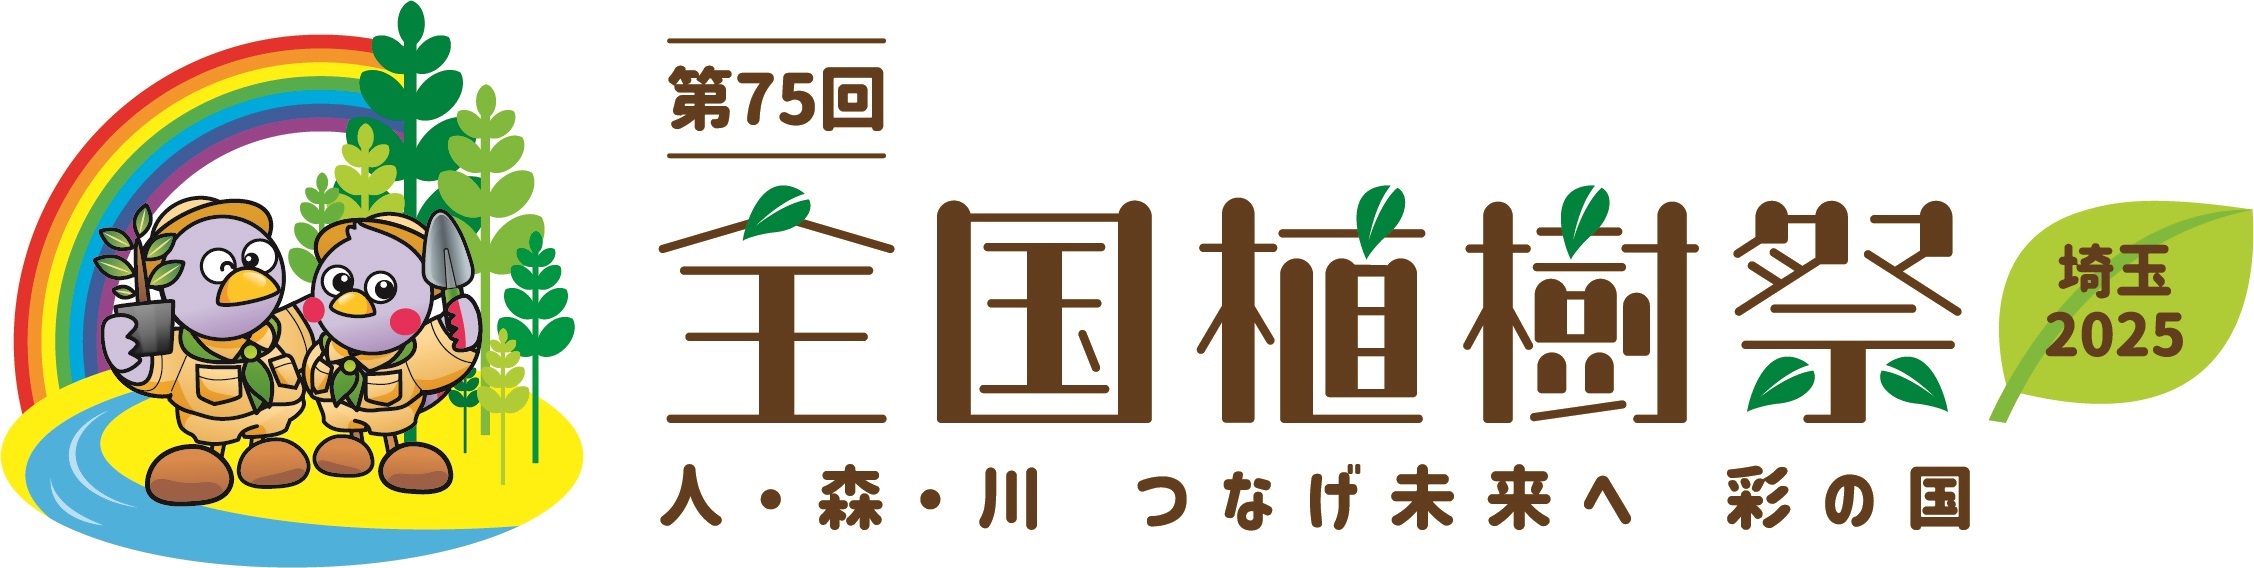 第75回全国植樹祭 埼玉2025